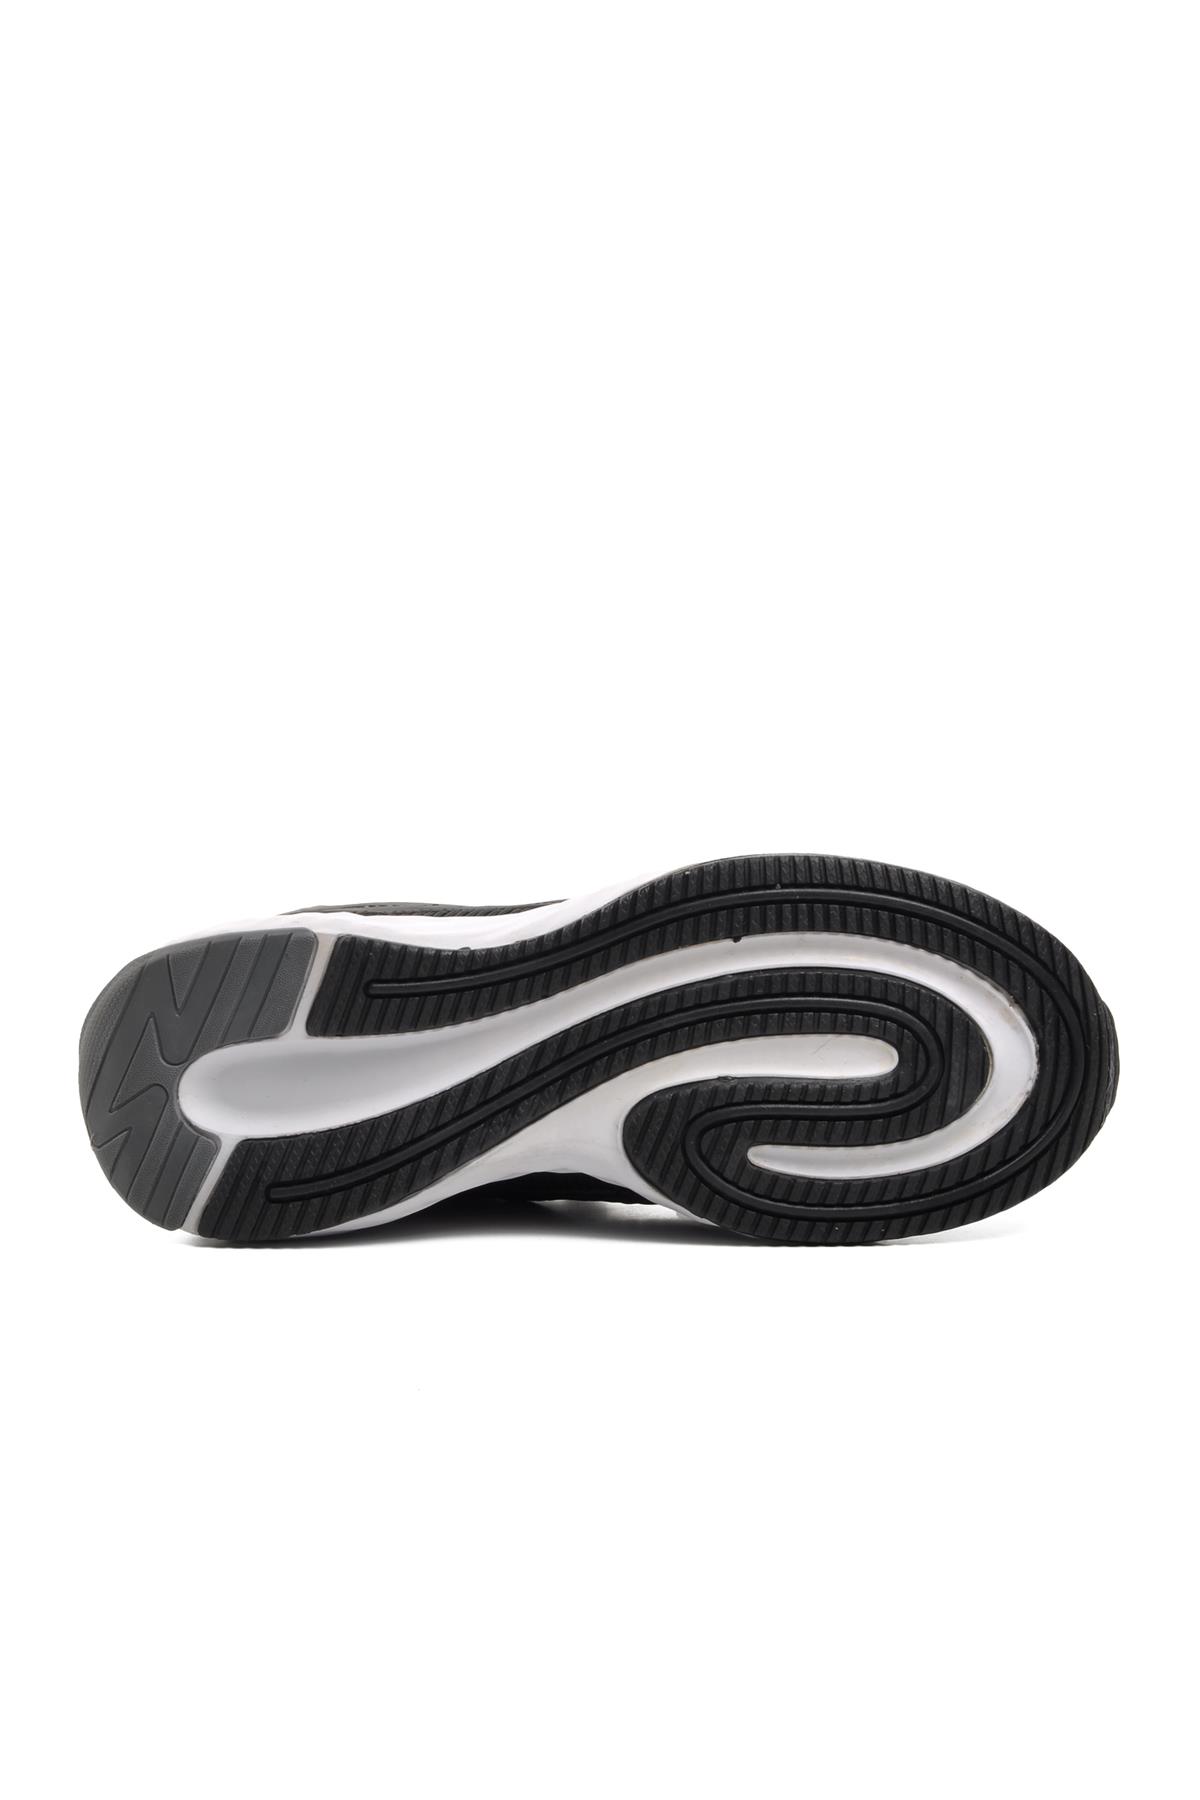 Ayakmod 40073 Siyah-Beyaz Bağcıklı Erkek Spor Ayakkabı Ayakmod Erkek Spor Ayakkabı